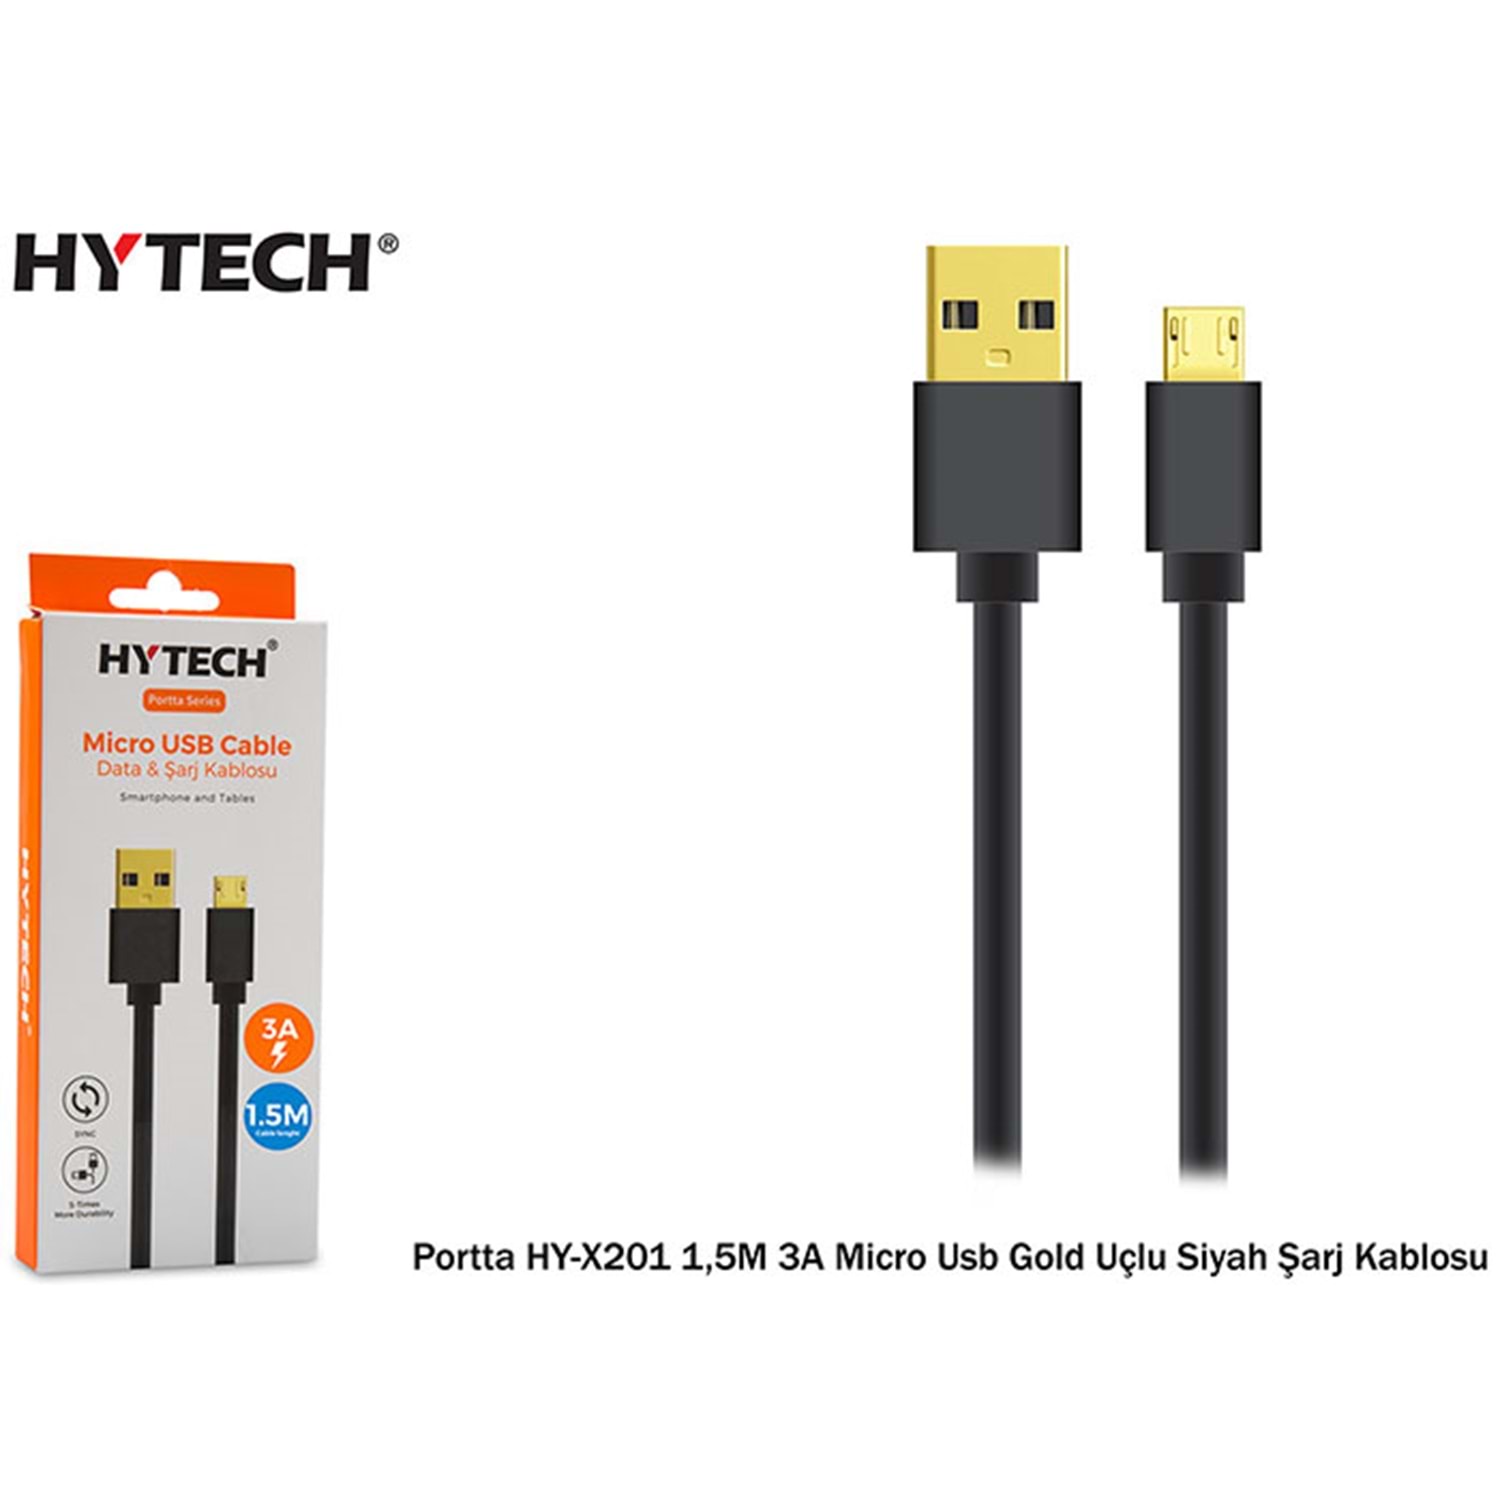 Hytech Portta HY-X201 1,5M 3A Micro Usb Gold Uçlu Beyaz Siyah Şarj Kablosu